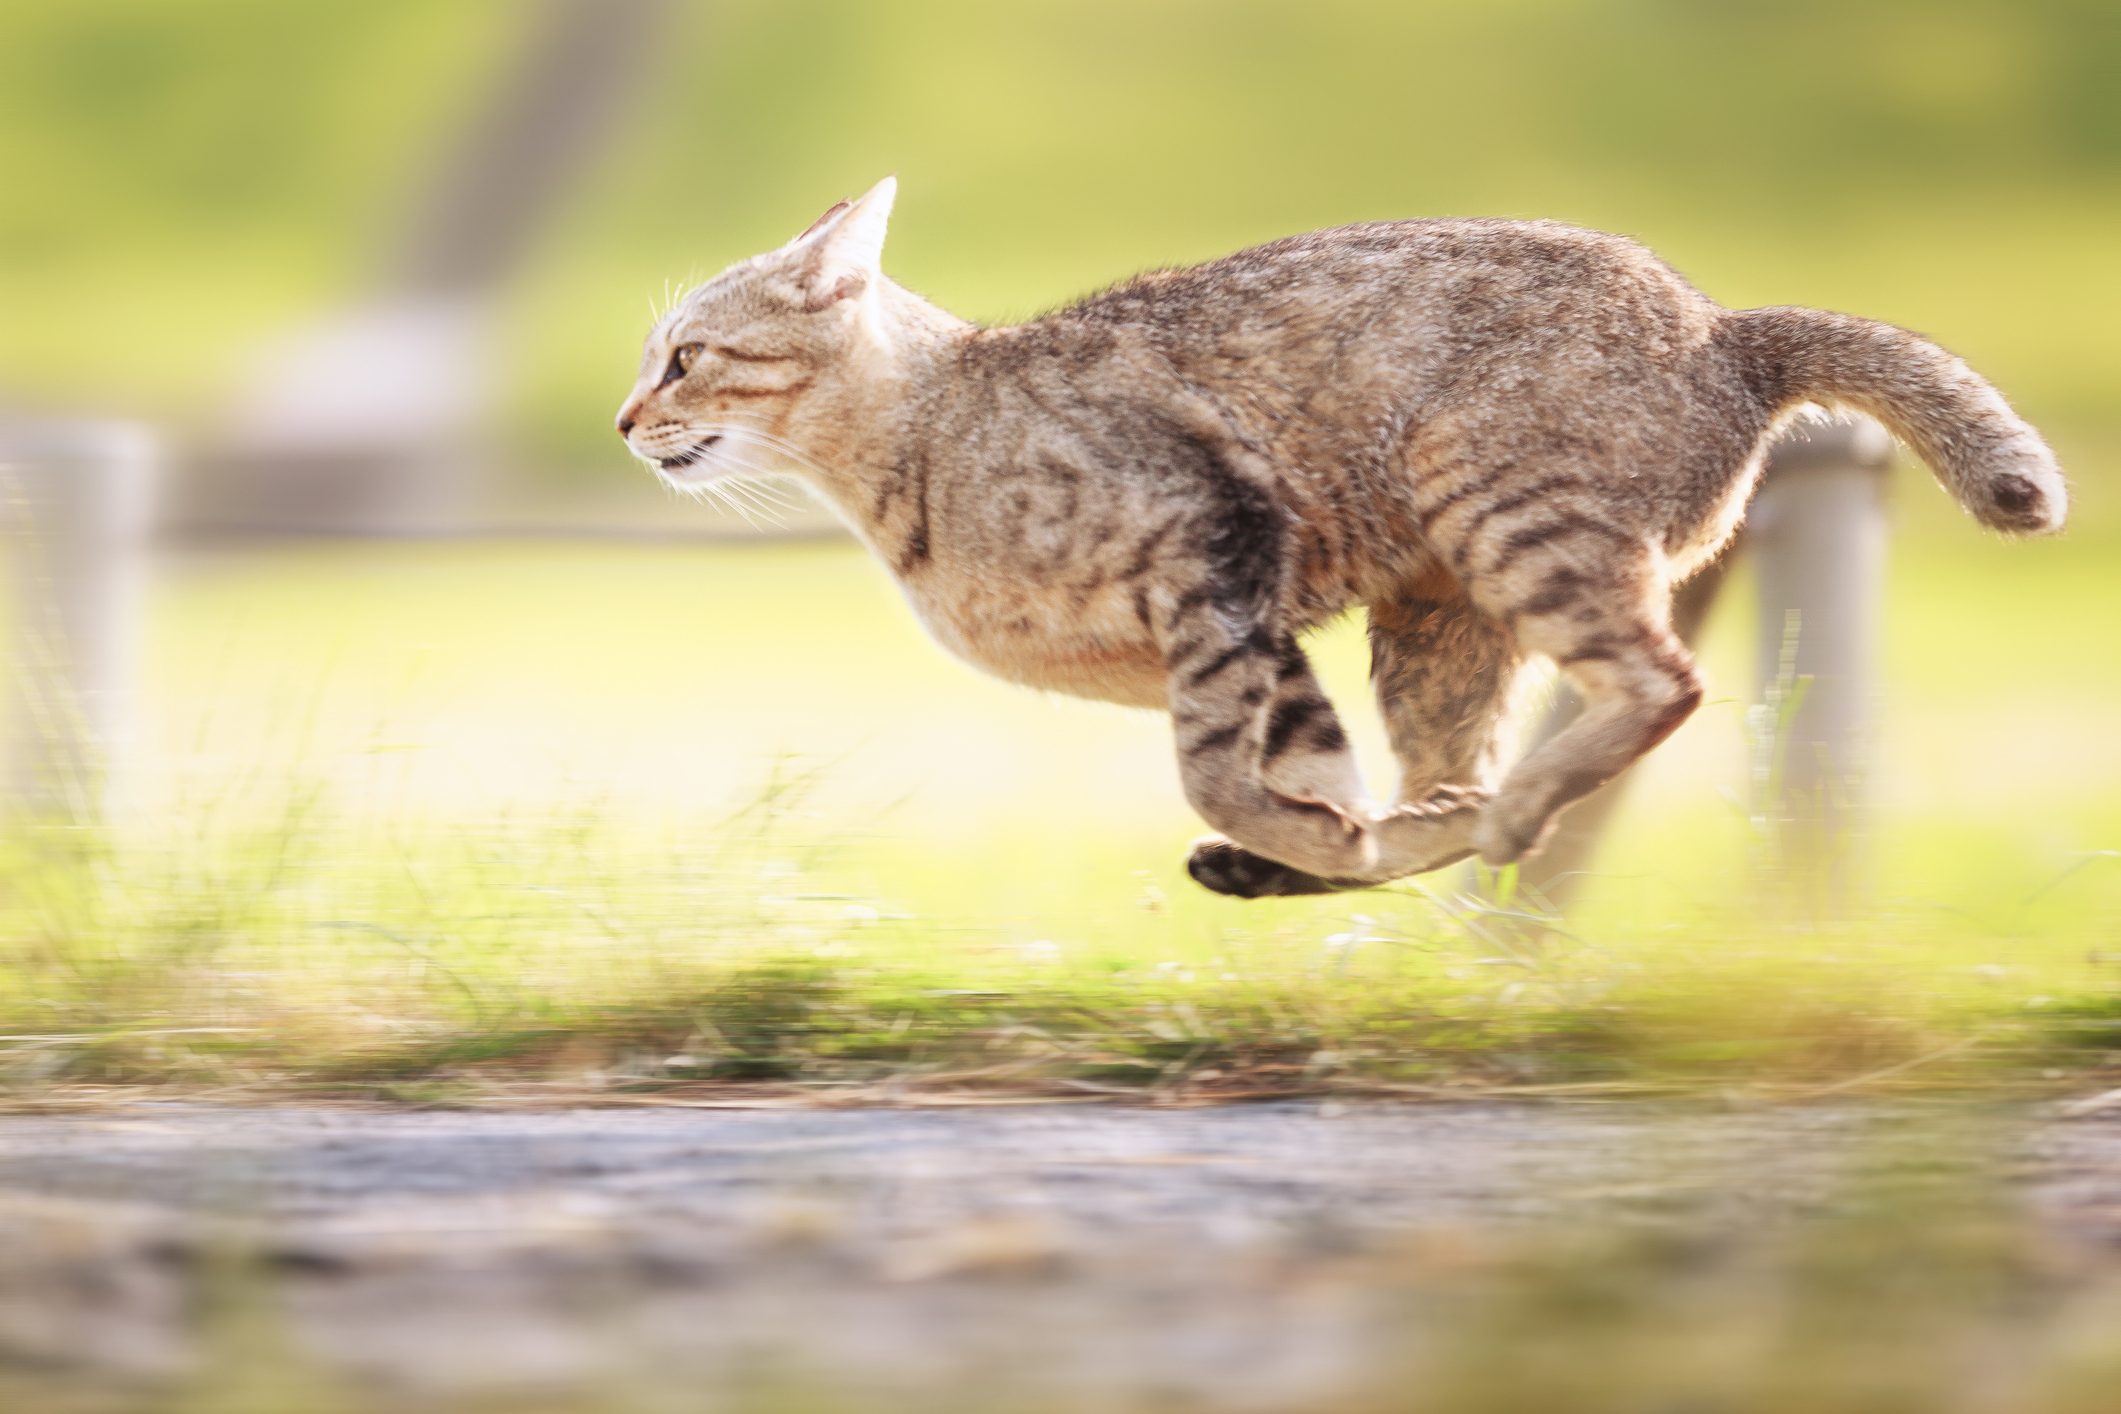 A cat running.